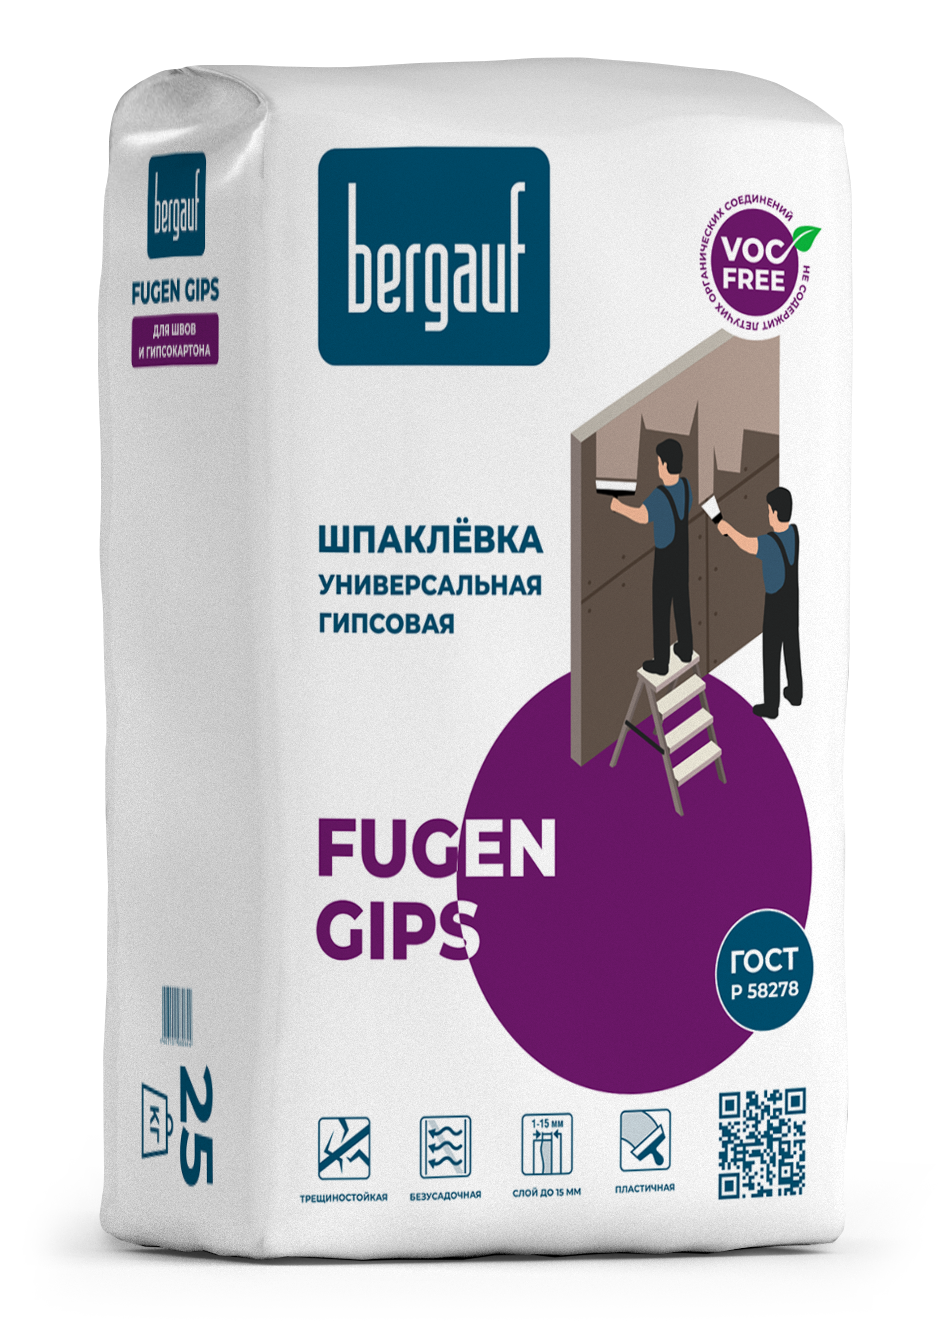 Fugen Gips - белая гипсовая шпаклевка  для ГКЛ 25кг